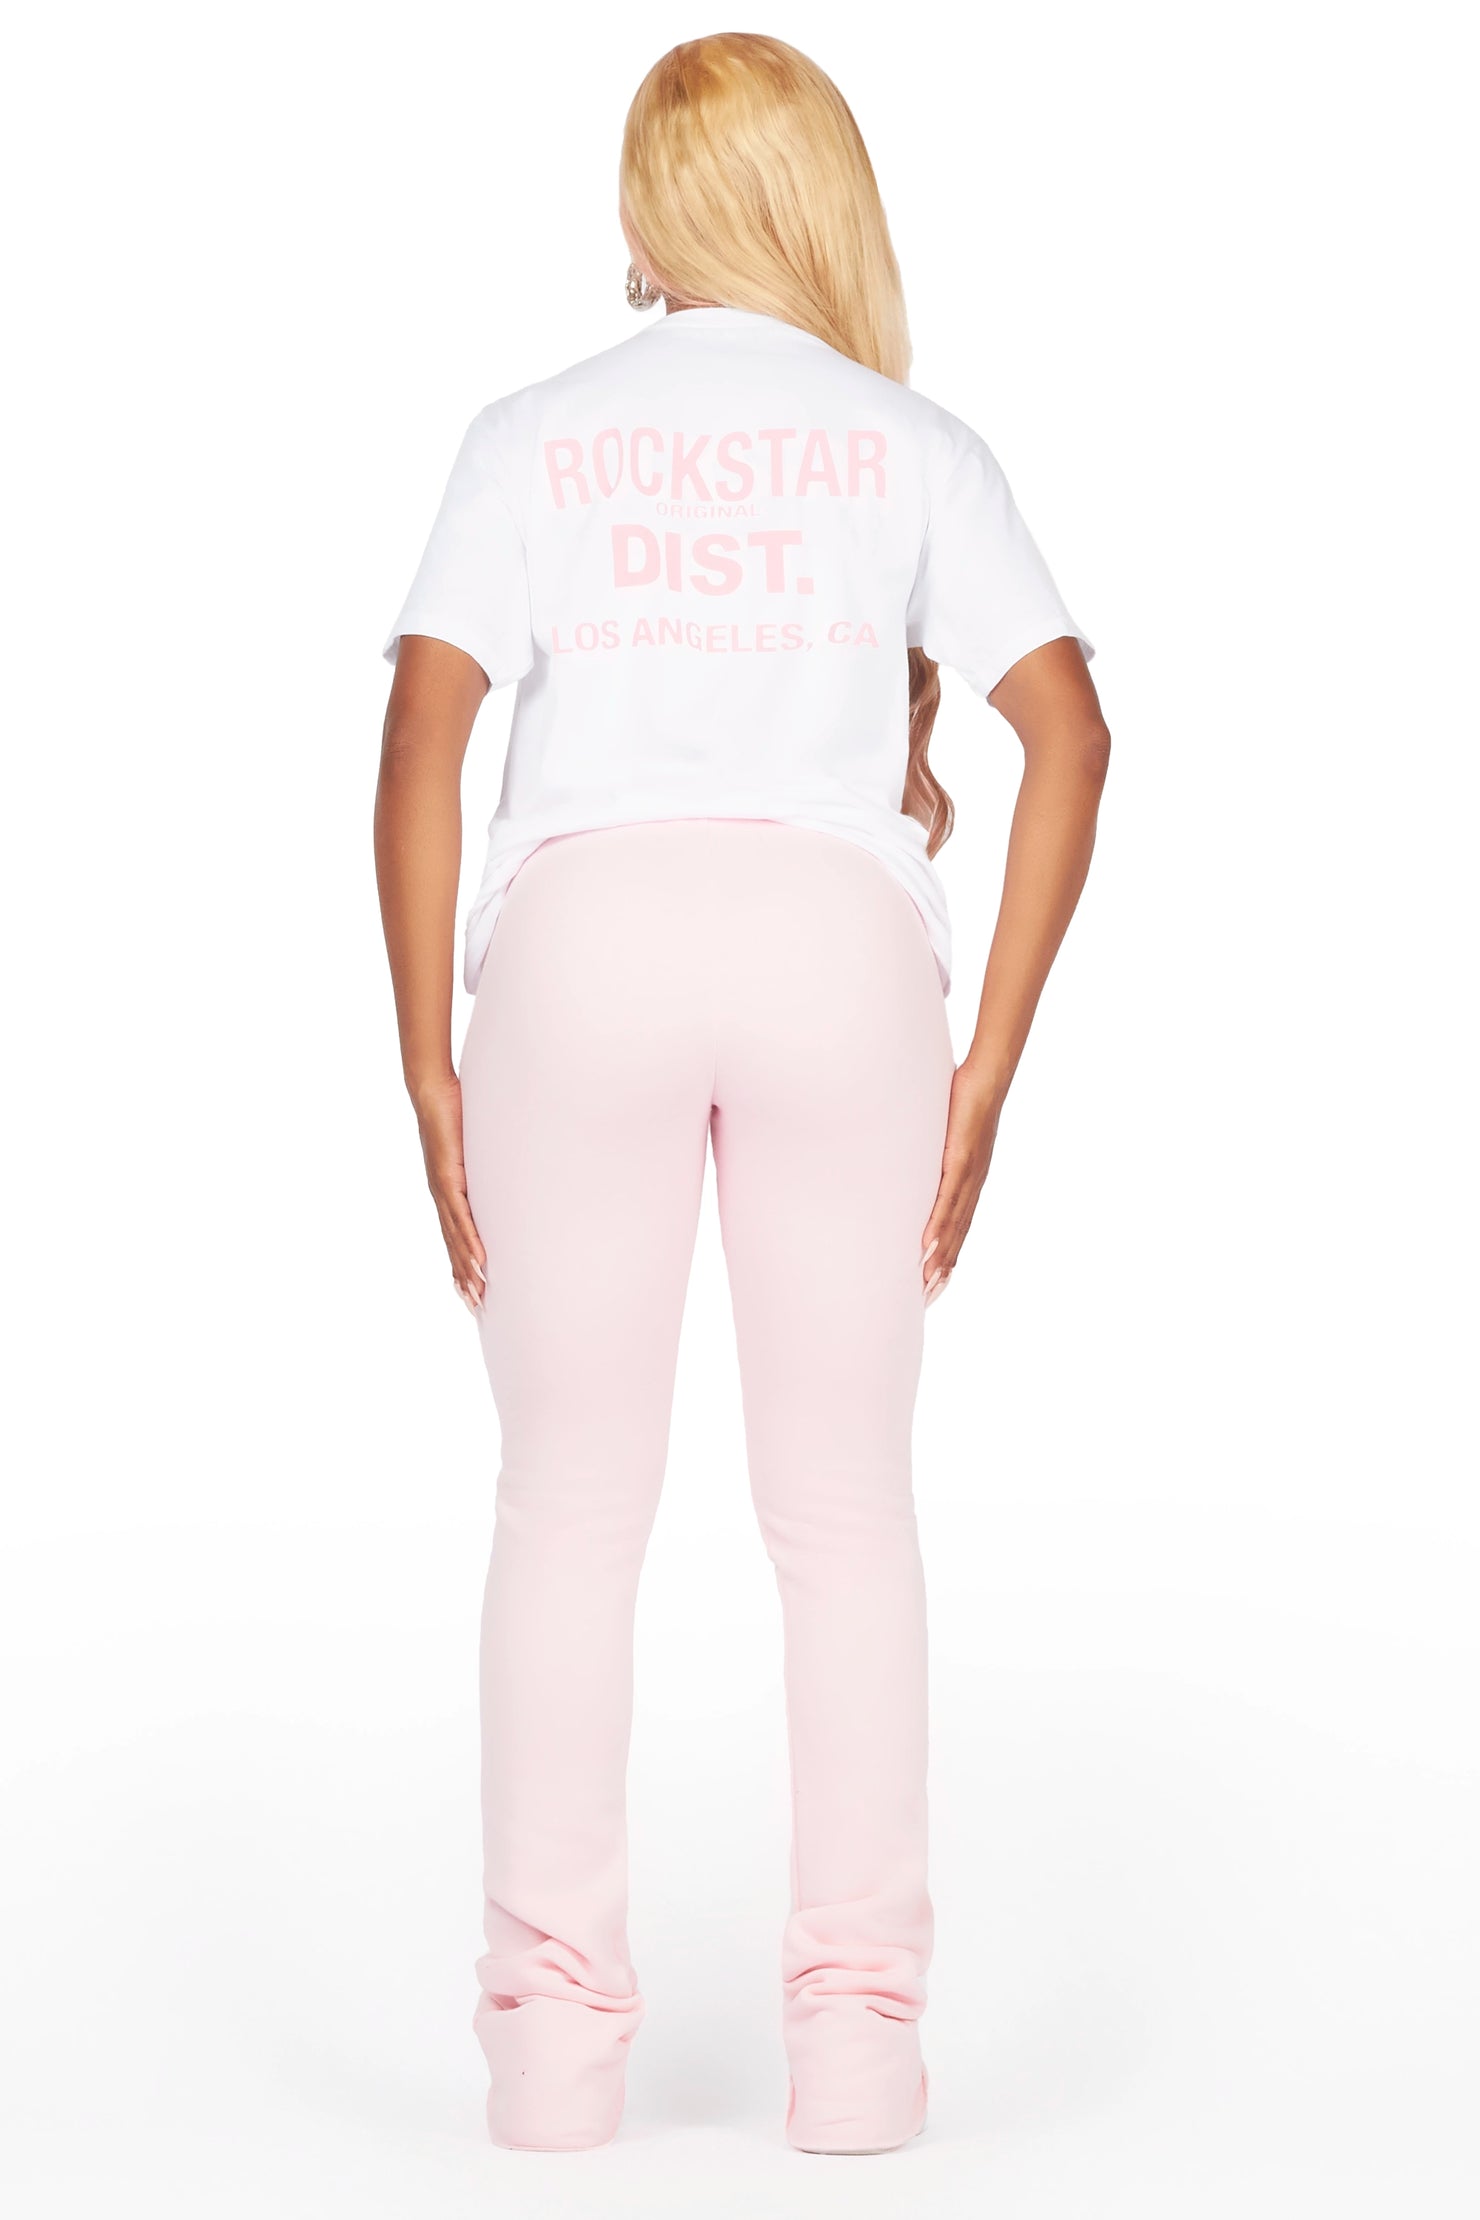 Atlantis 2.0 White/Pink T-Shirt Trackset